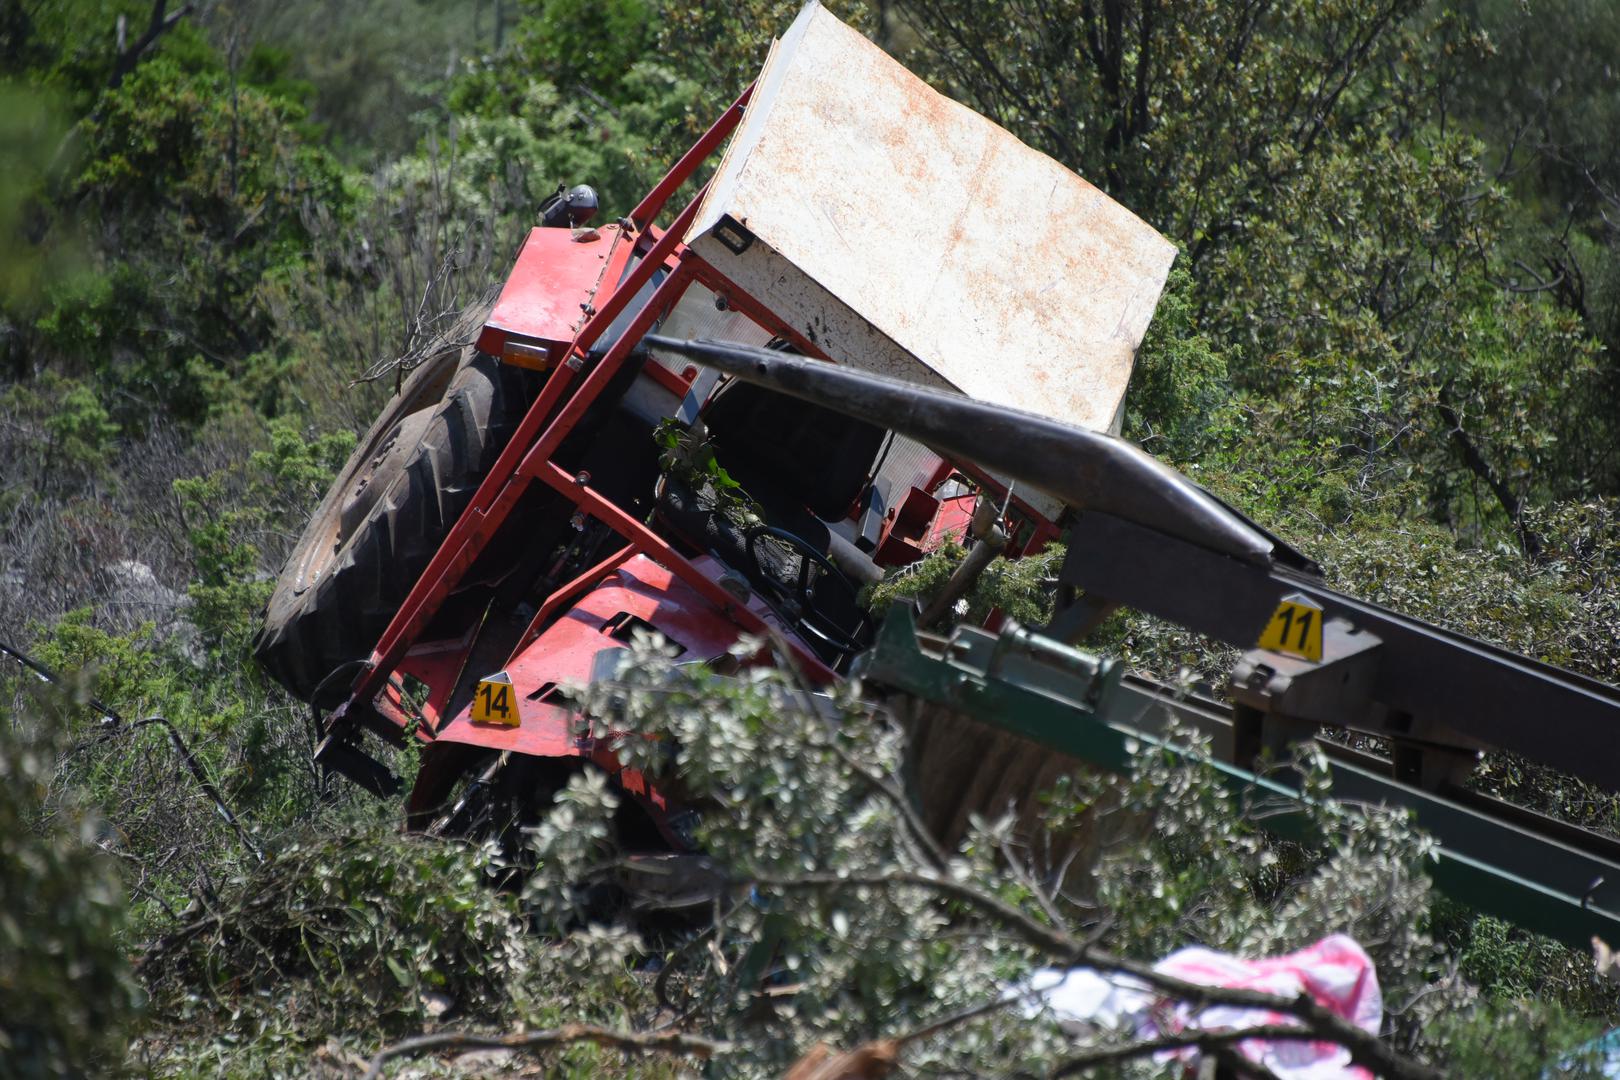 26.05.2023., Labin - Puka sreca spasila je 20ak labinskih maturanata, koji su se traktorom prevrnuli u provaliju. Photo: Sasa Miljevic/PIXSELL